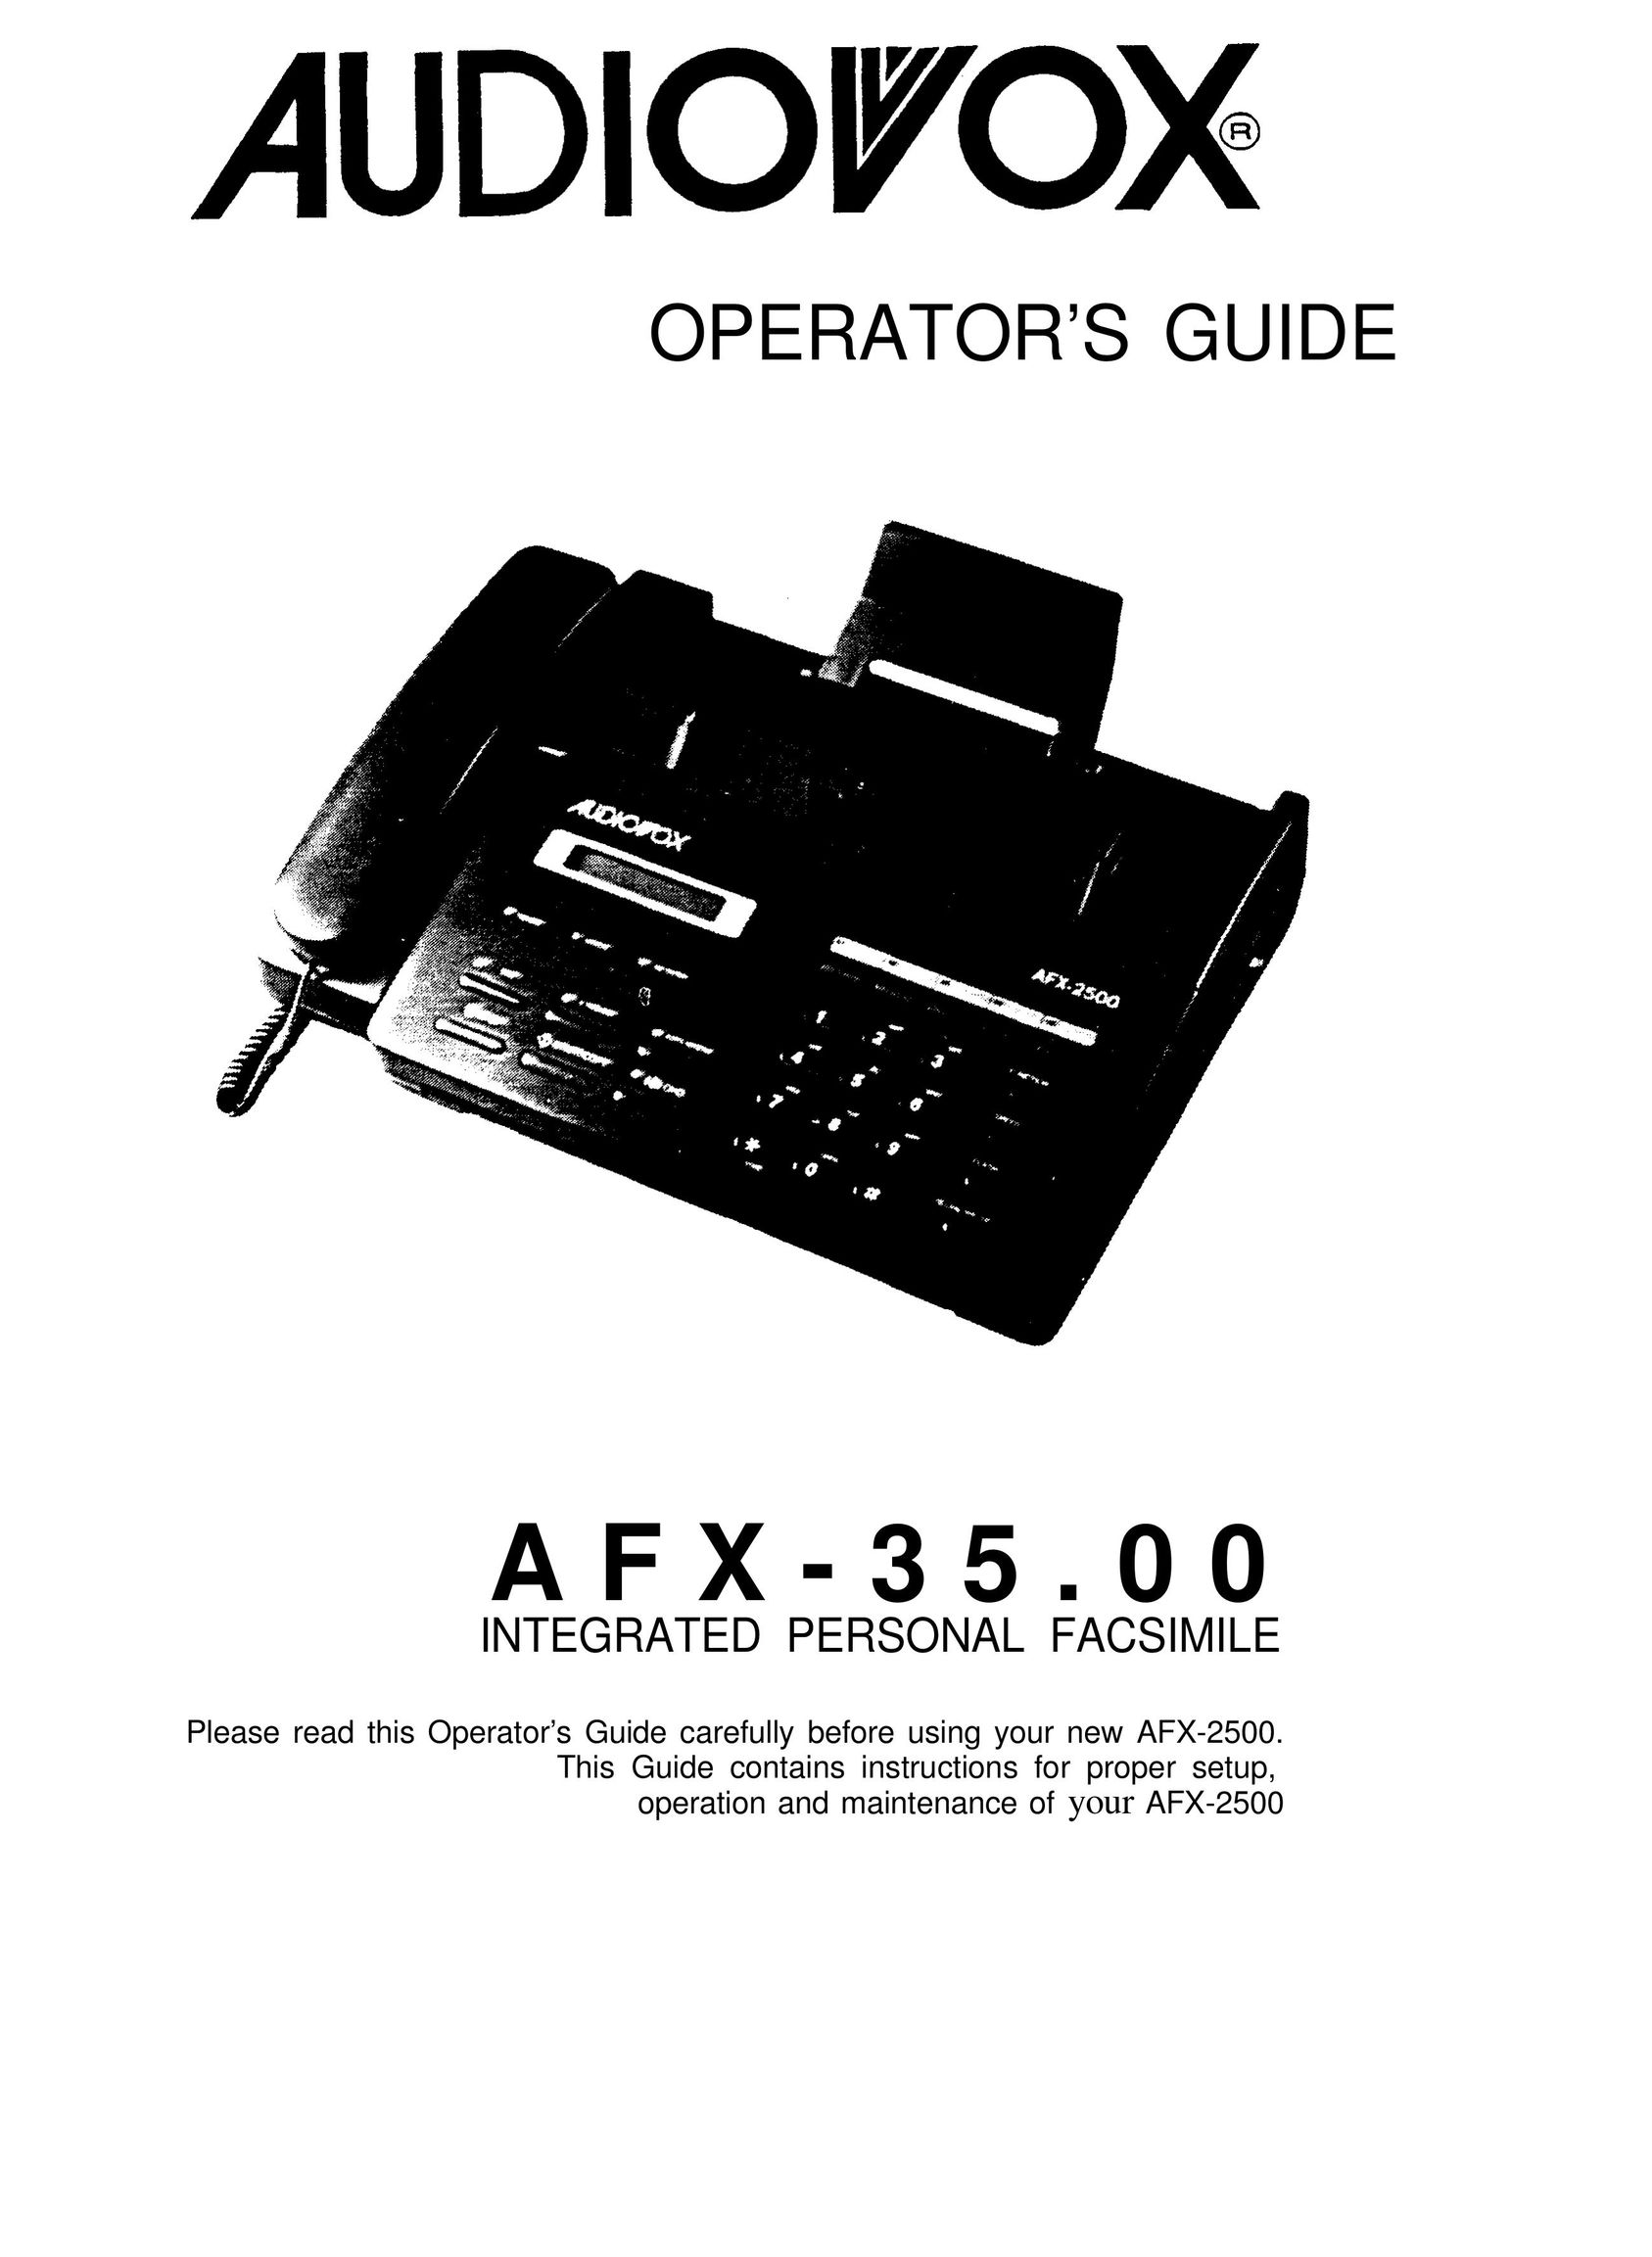 Audiovox VE-500 Fax Machine User Manual